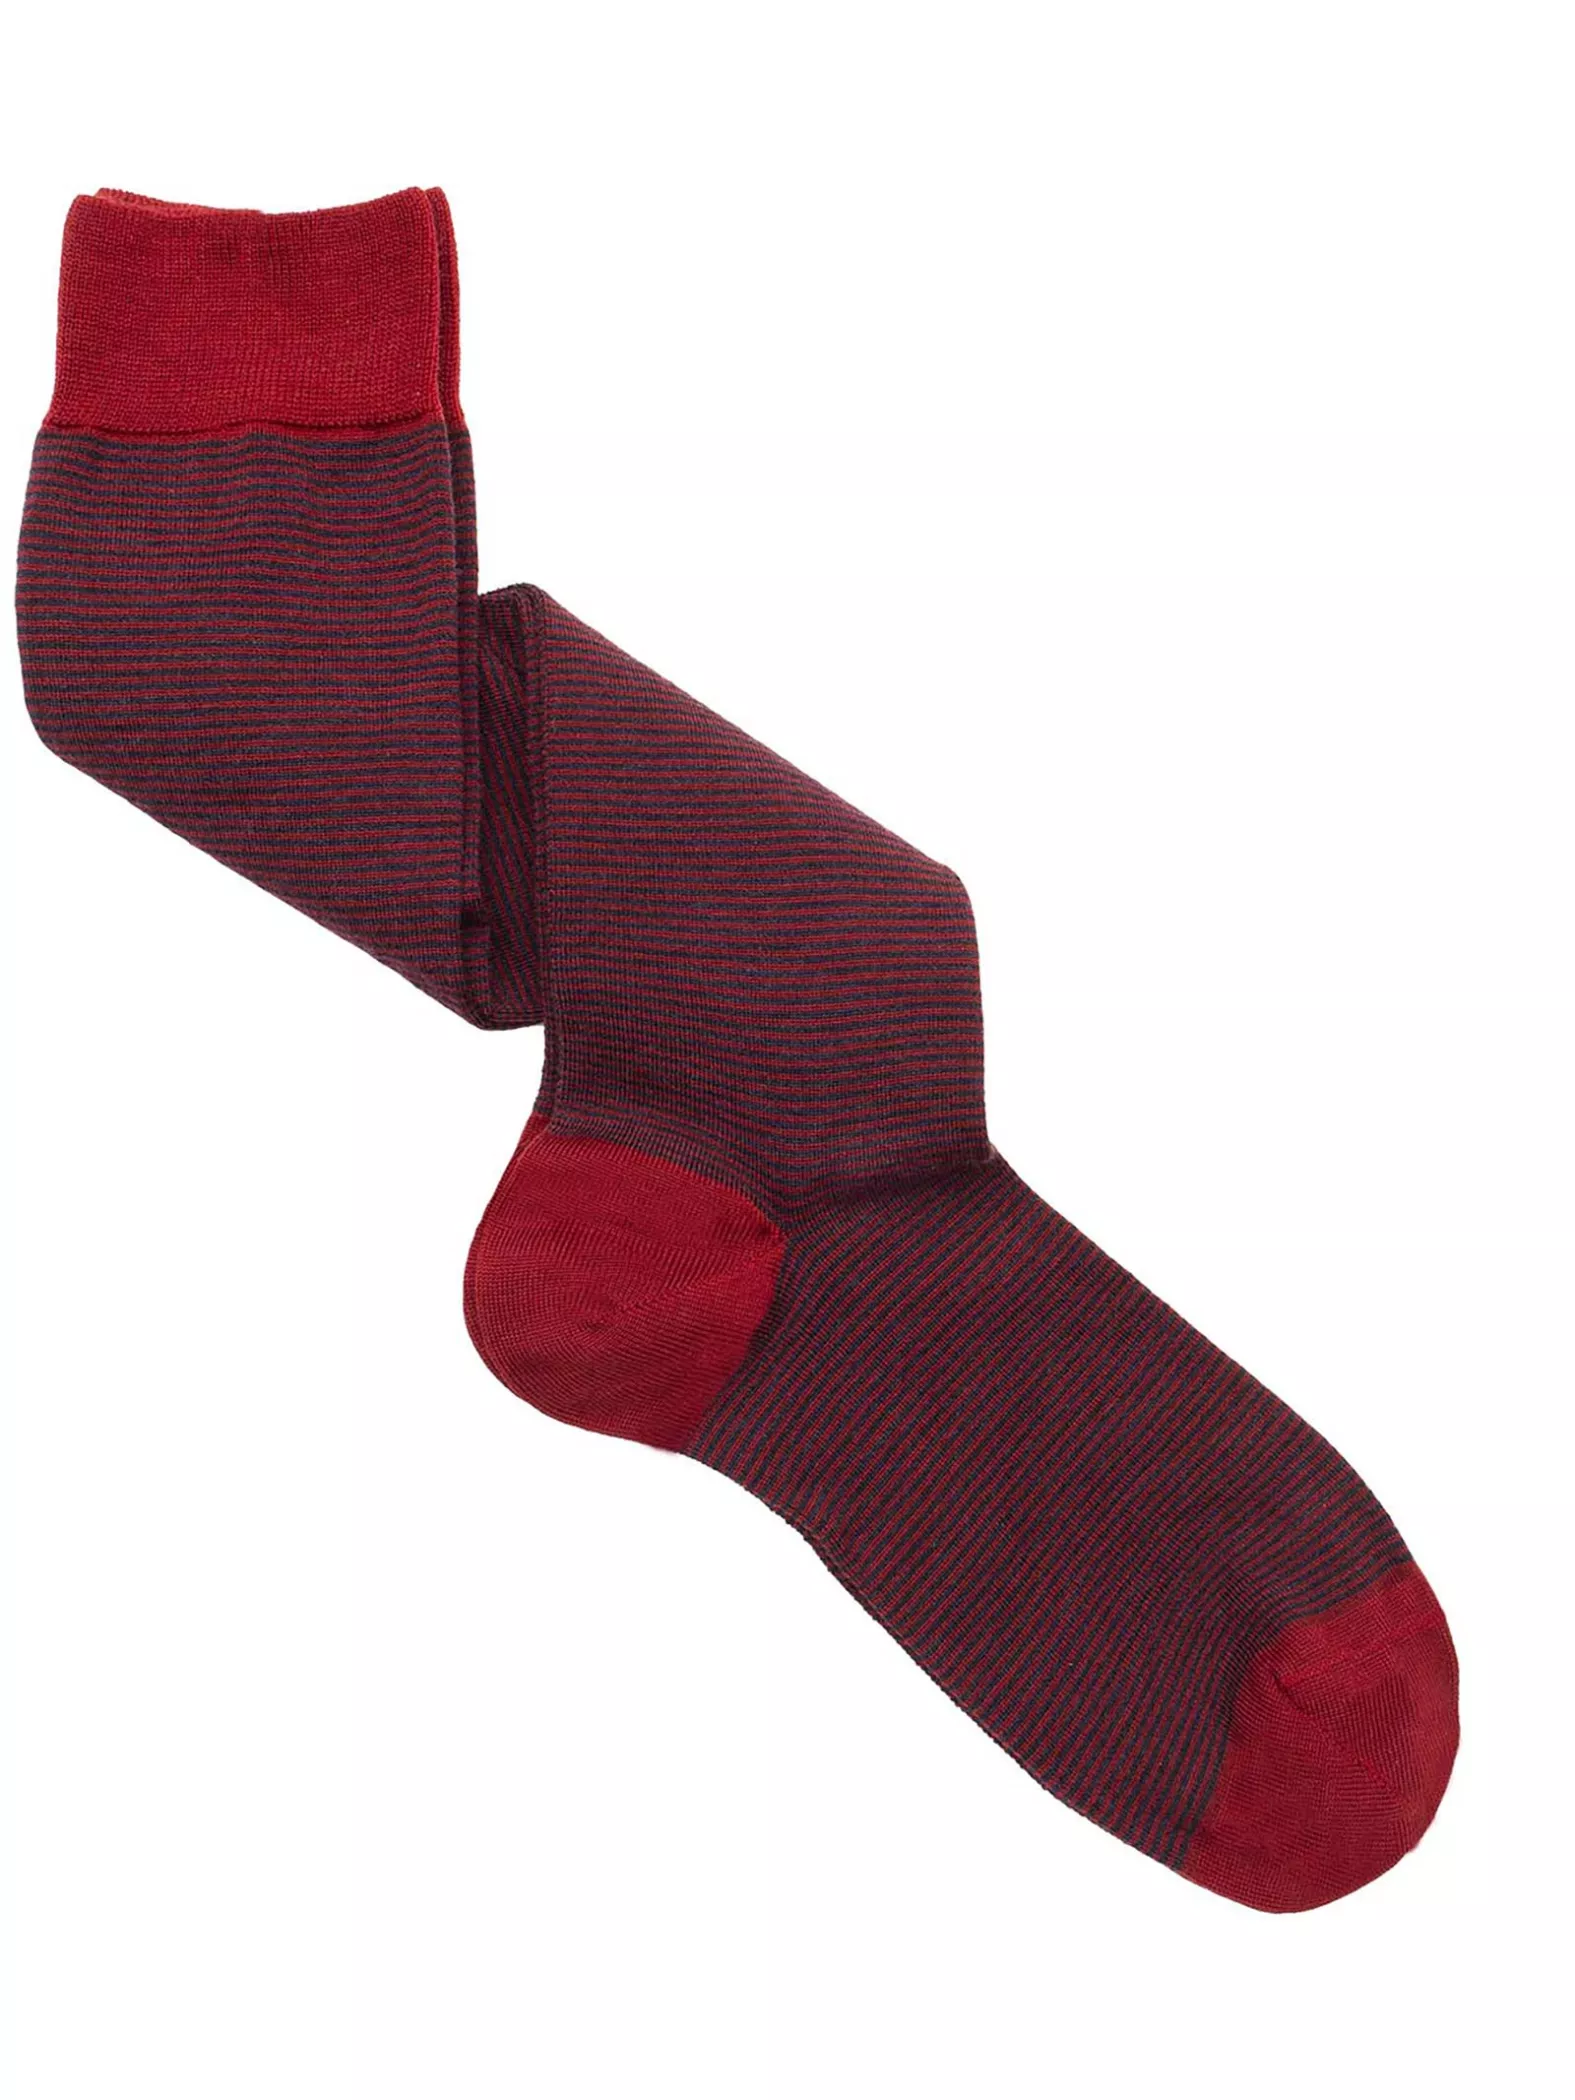 Elegant Striped Patterned Wool Men's Long Socks - One Size